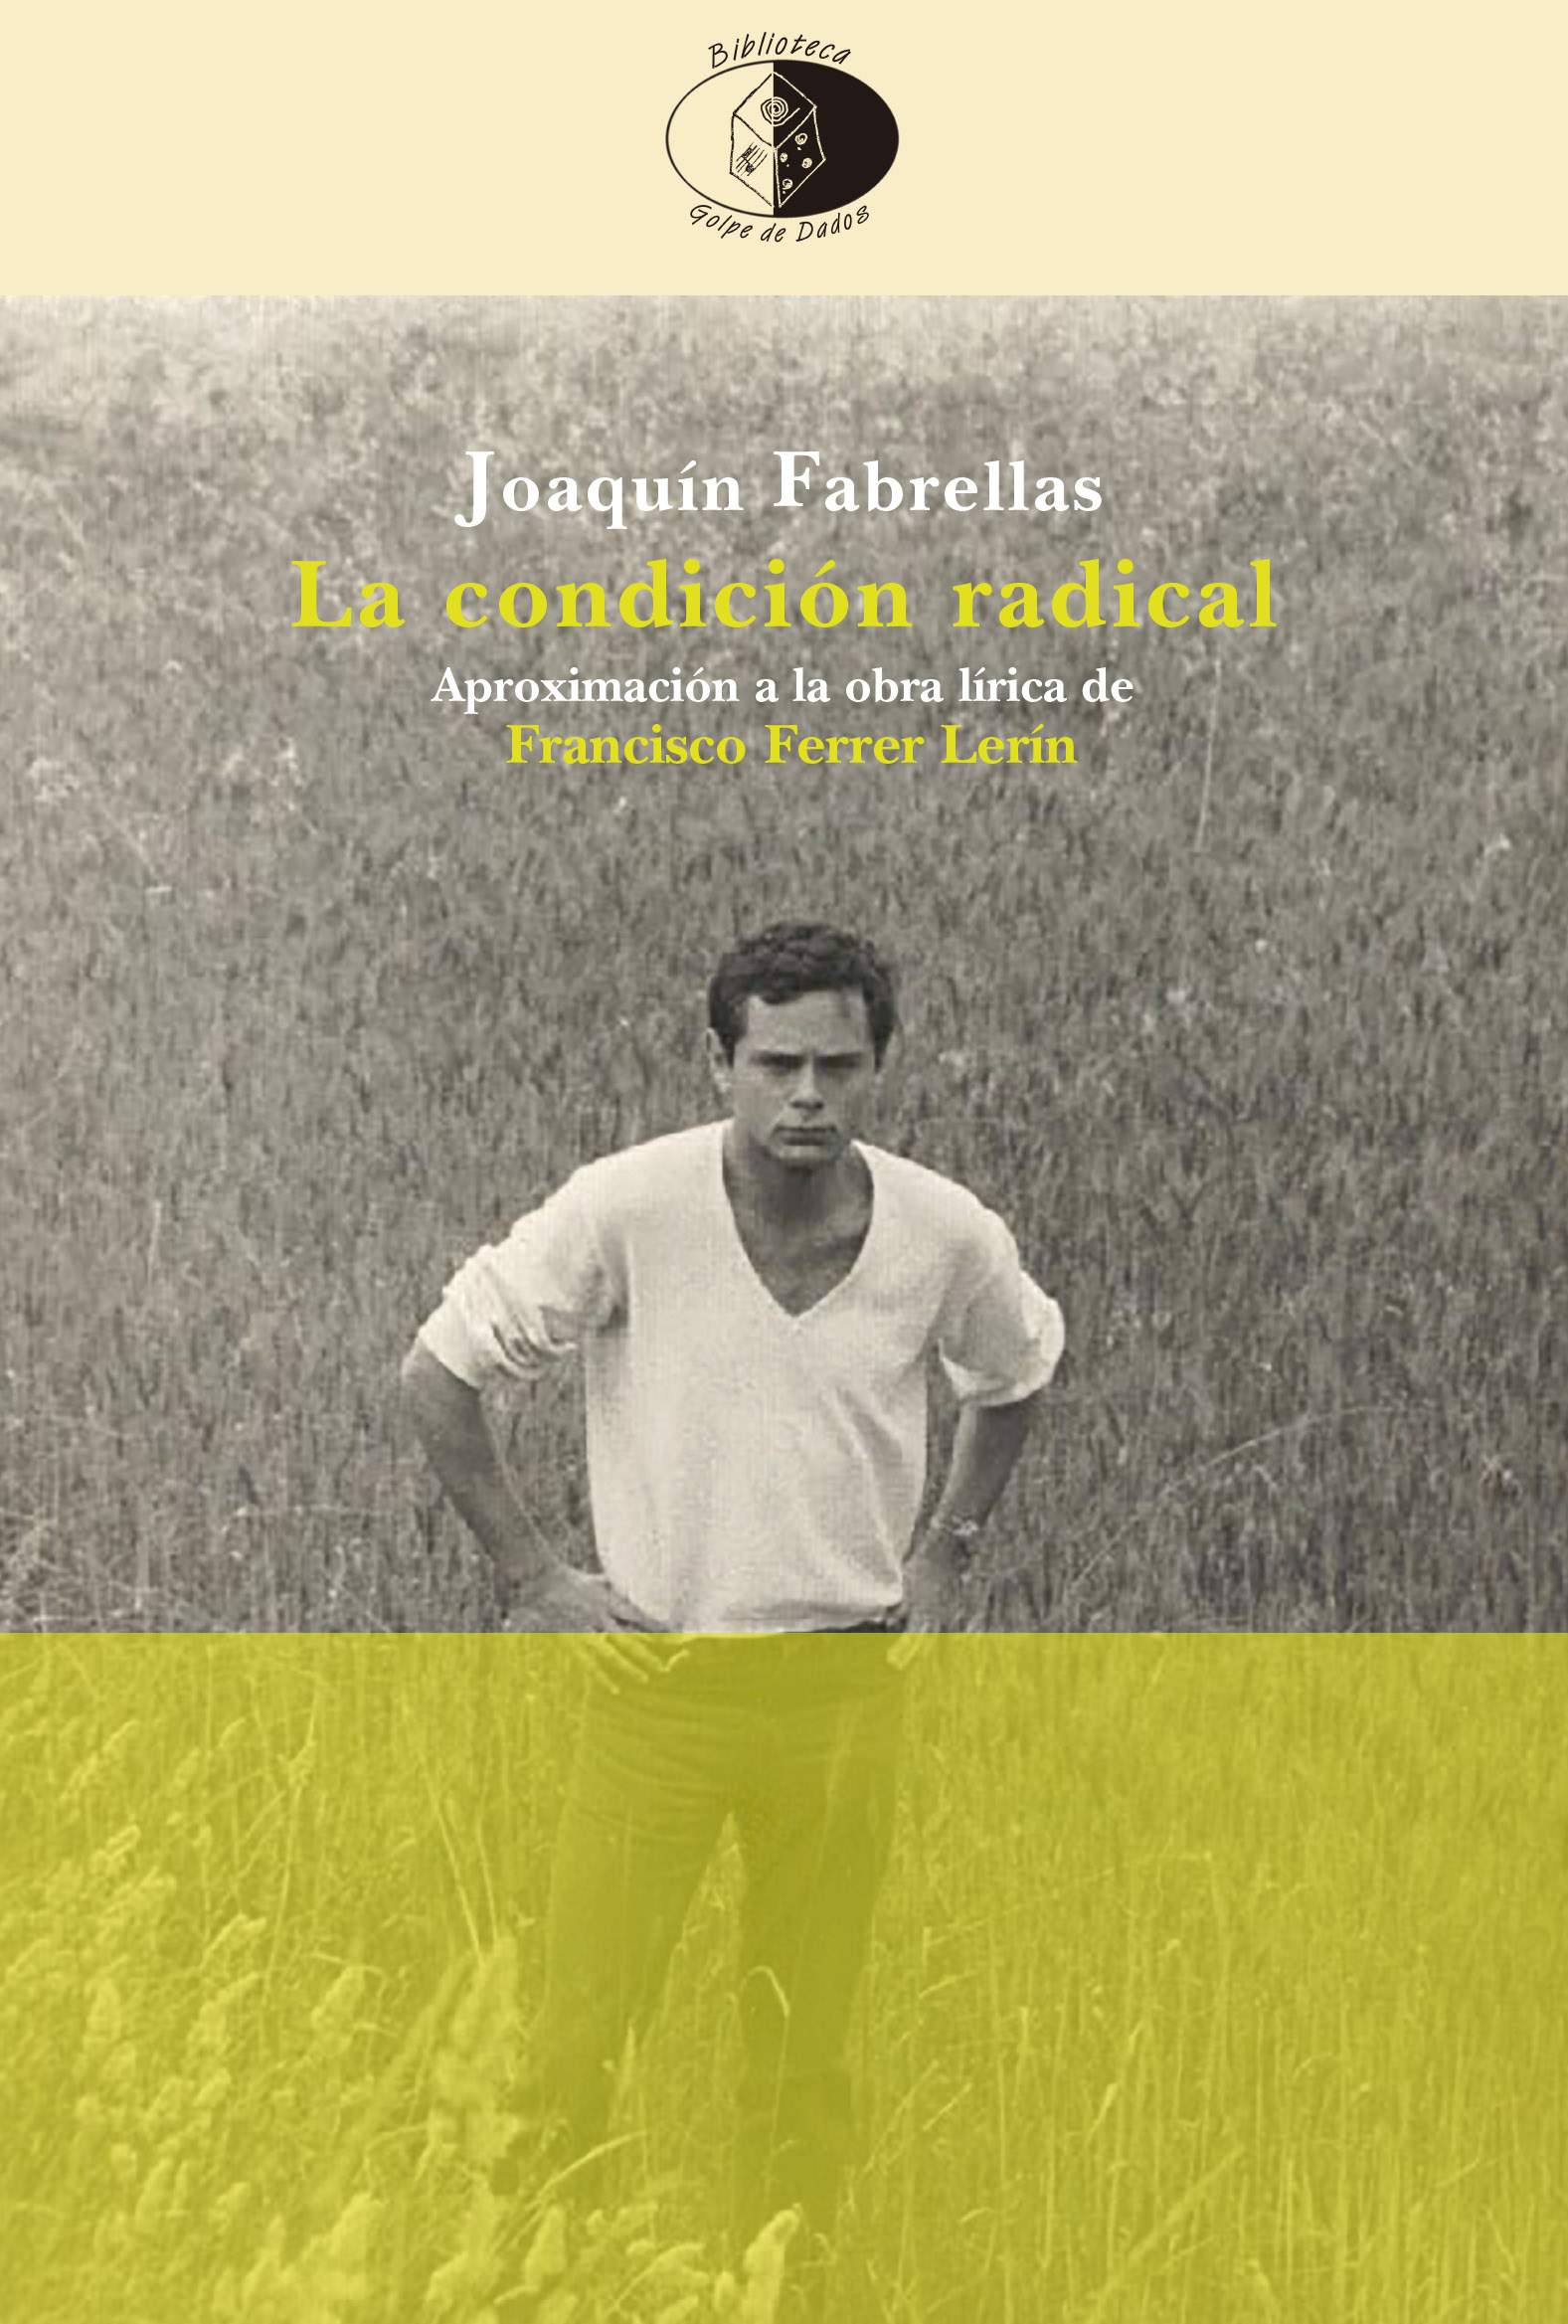 Miguel Ángel Ordovás reseña La condición radical. Aproximación a la obra lírica de Francisco Ferrer Lerín, de Joaquín Fabrellas